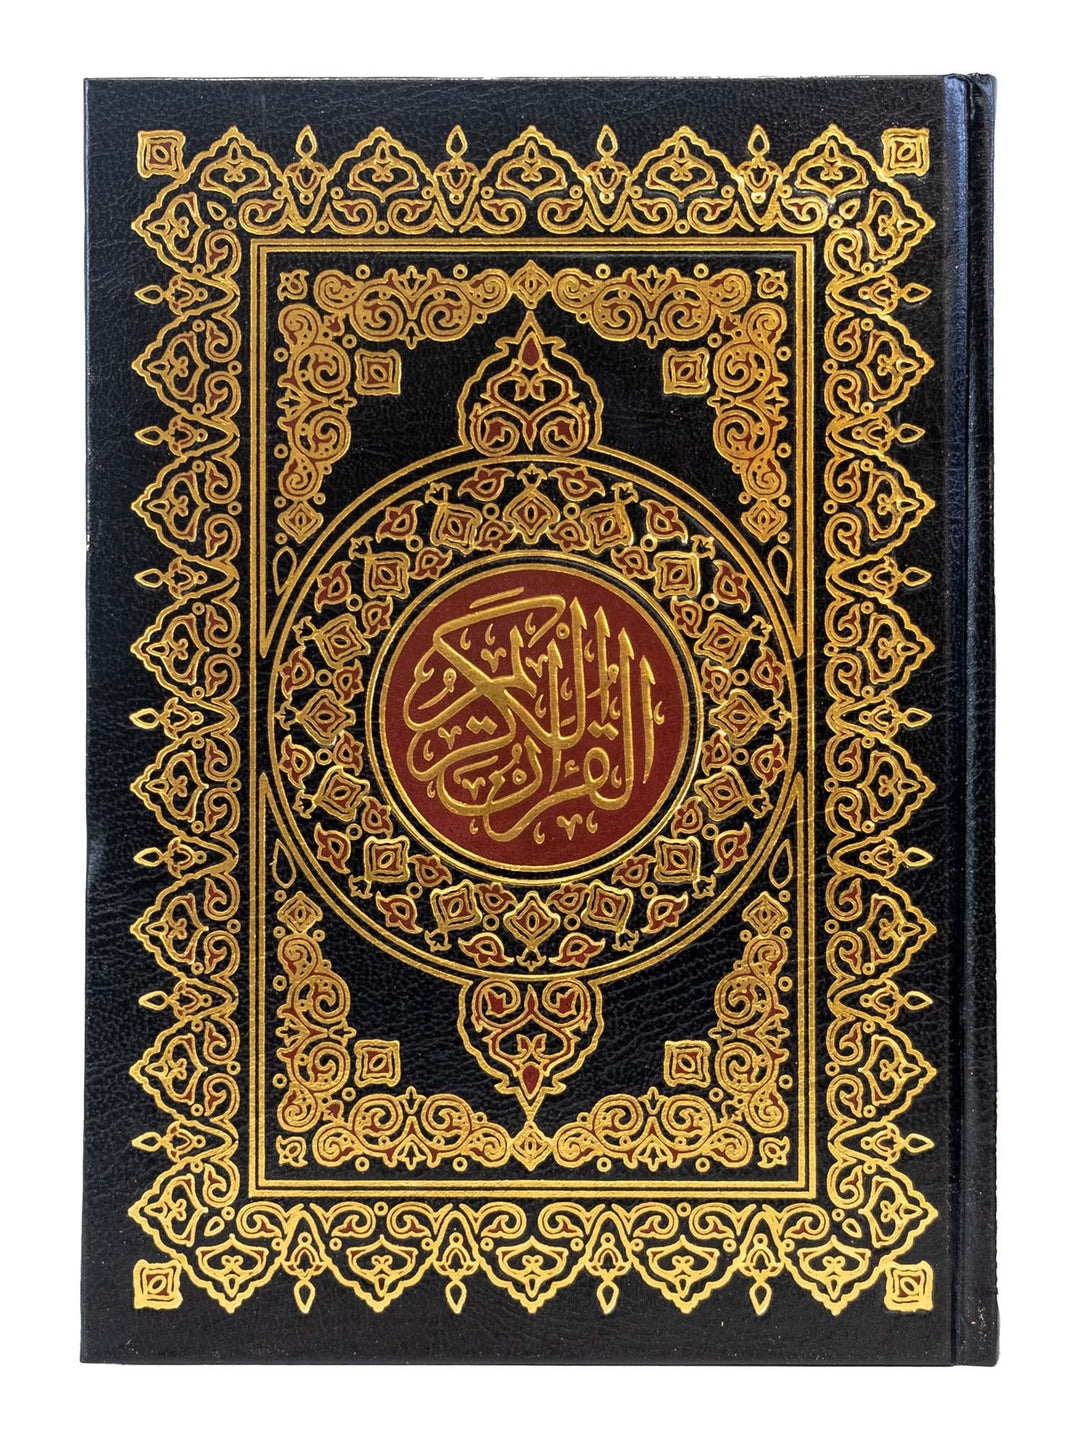 القرآن الكريم - 15 سطراً بالخط العثماني - بدون نسخة كبيرة